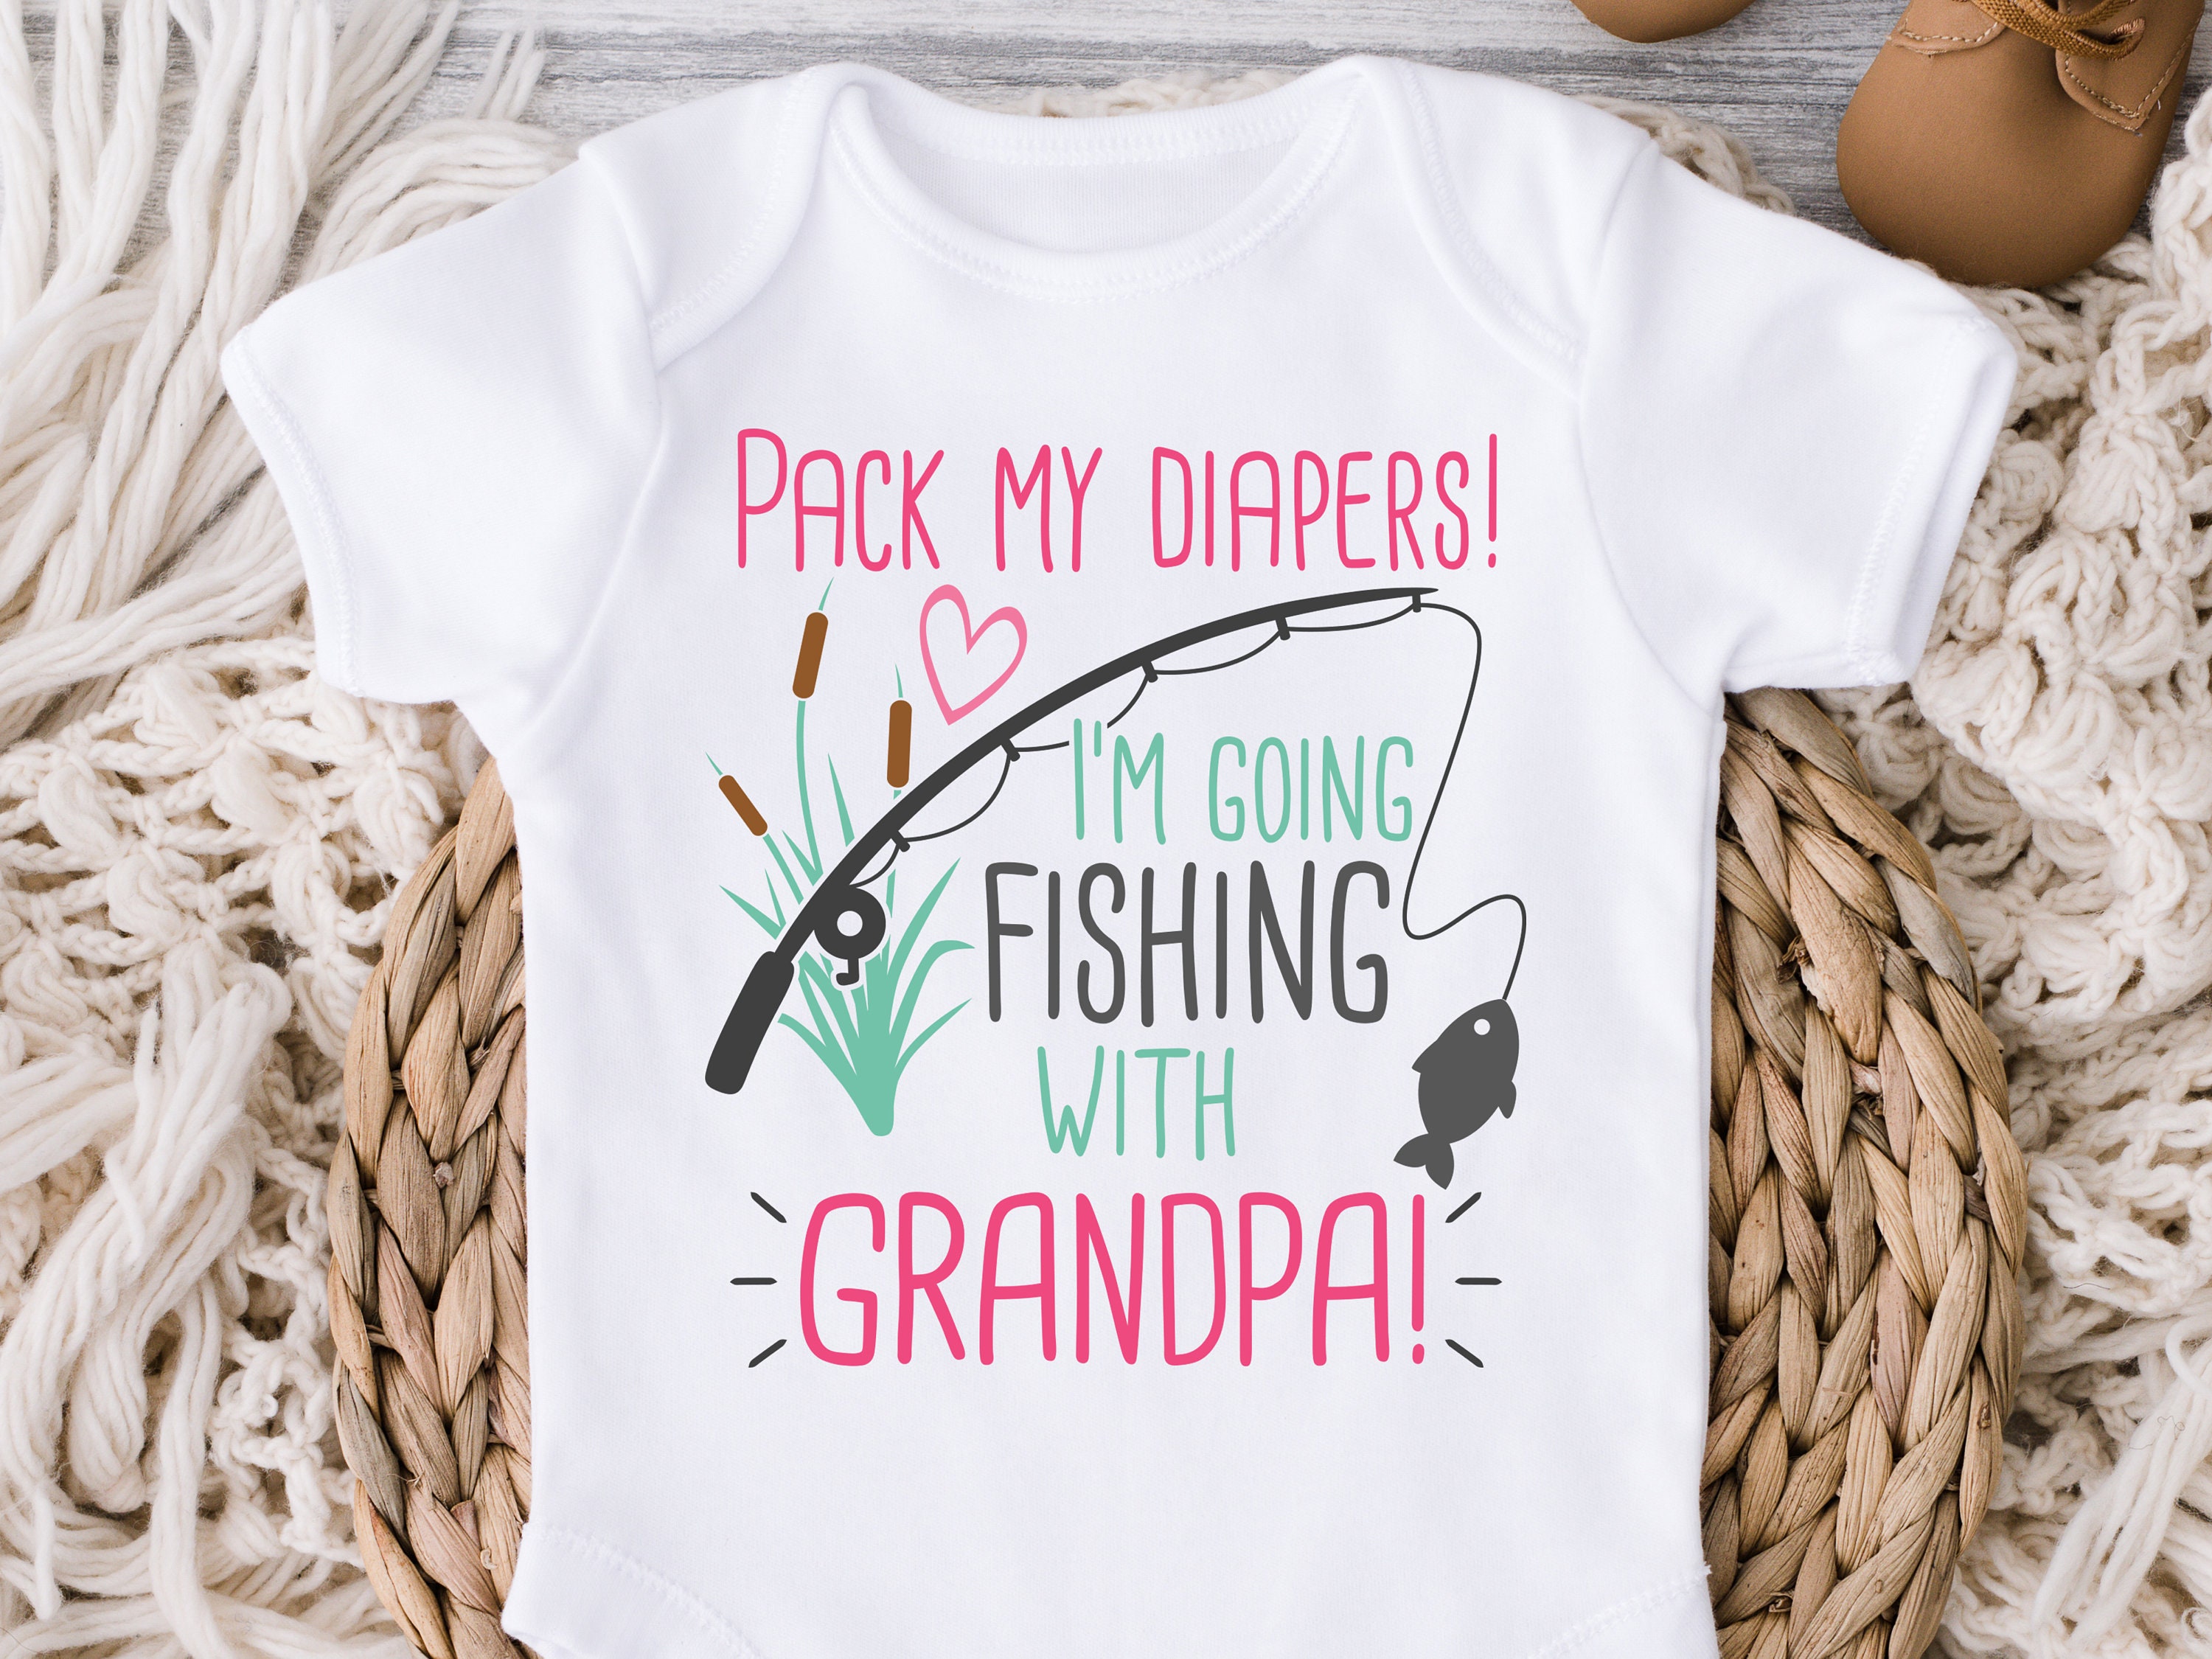 Toddler Granddaughter Fishing Shirt, Toddler Girl Fishing with Grandpa, Grandpas Fishing Girl, Granddaughter Fishing Tee, Cute Gift, 1033